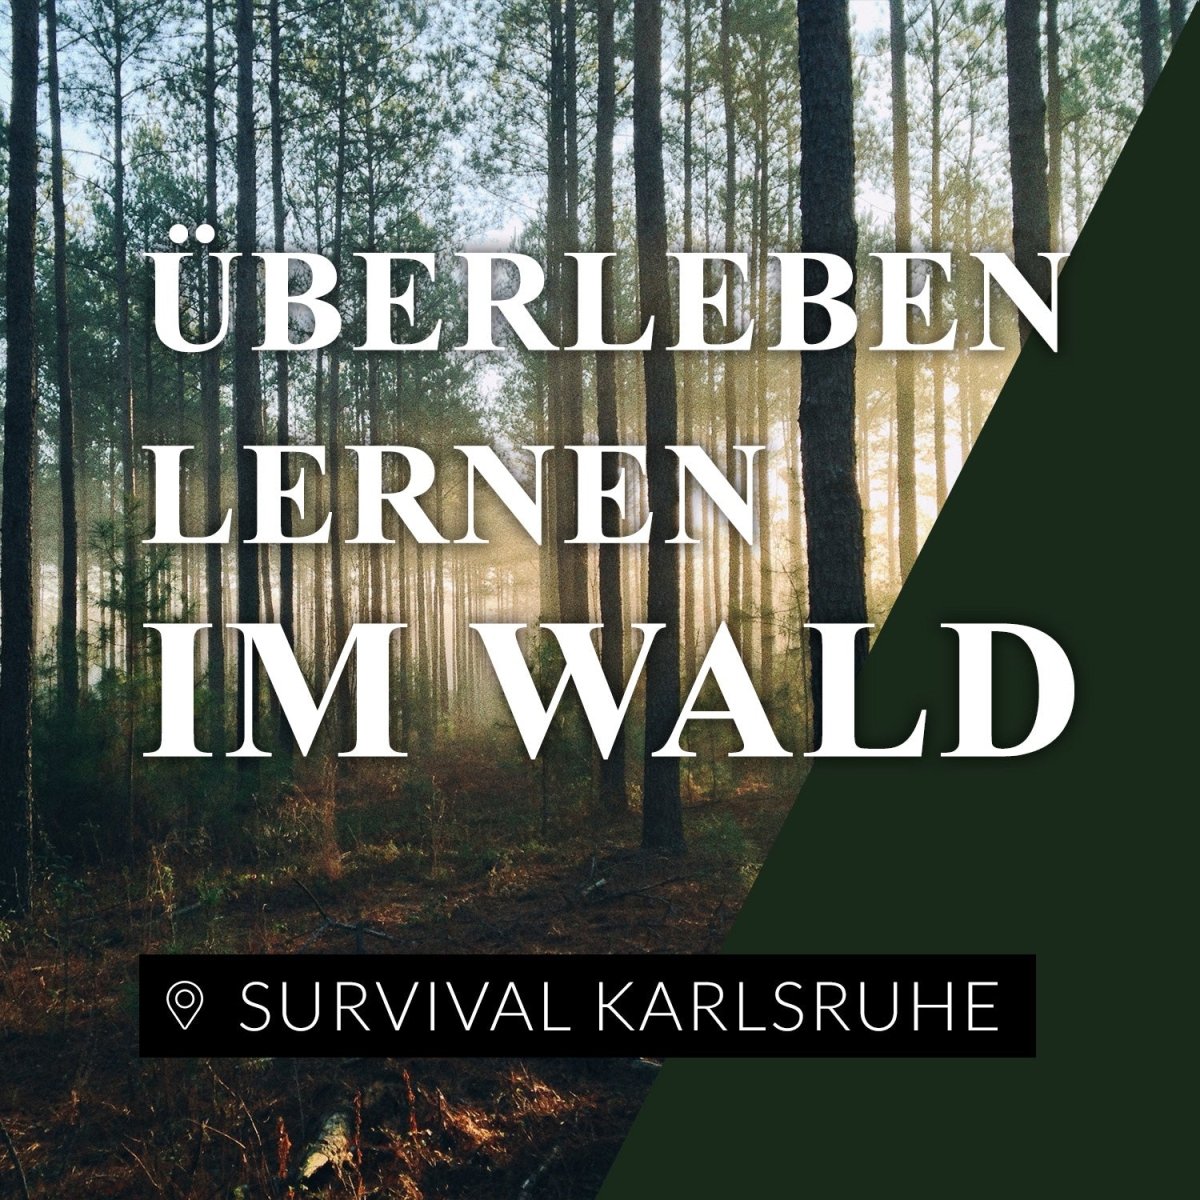 Survival Karlsruhe